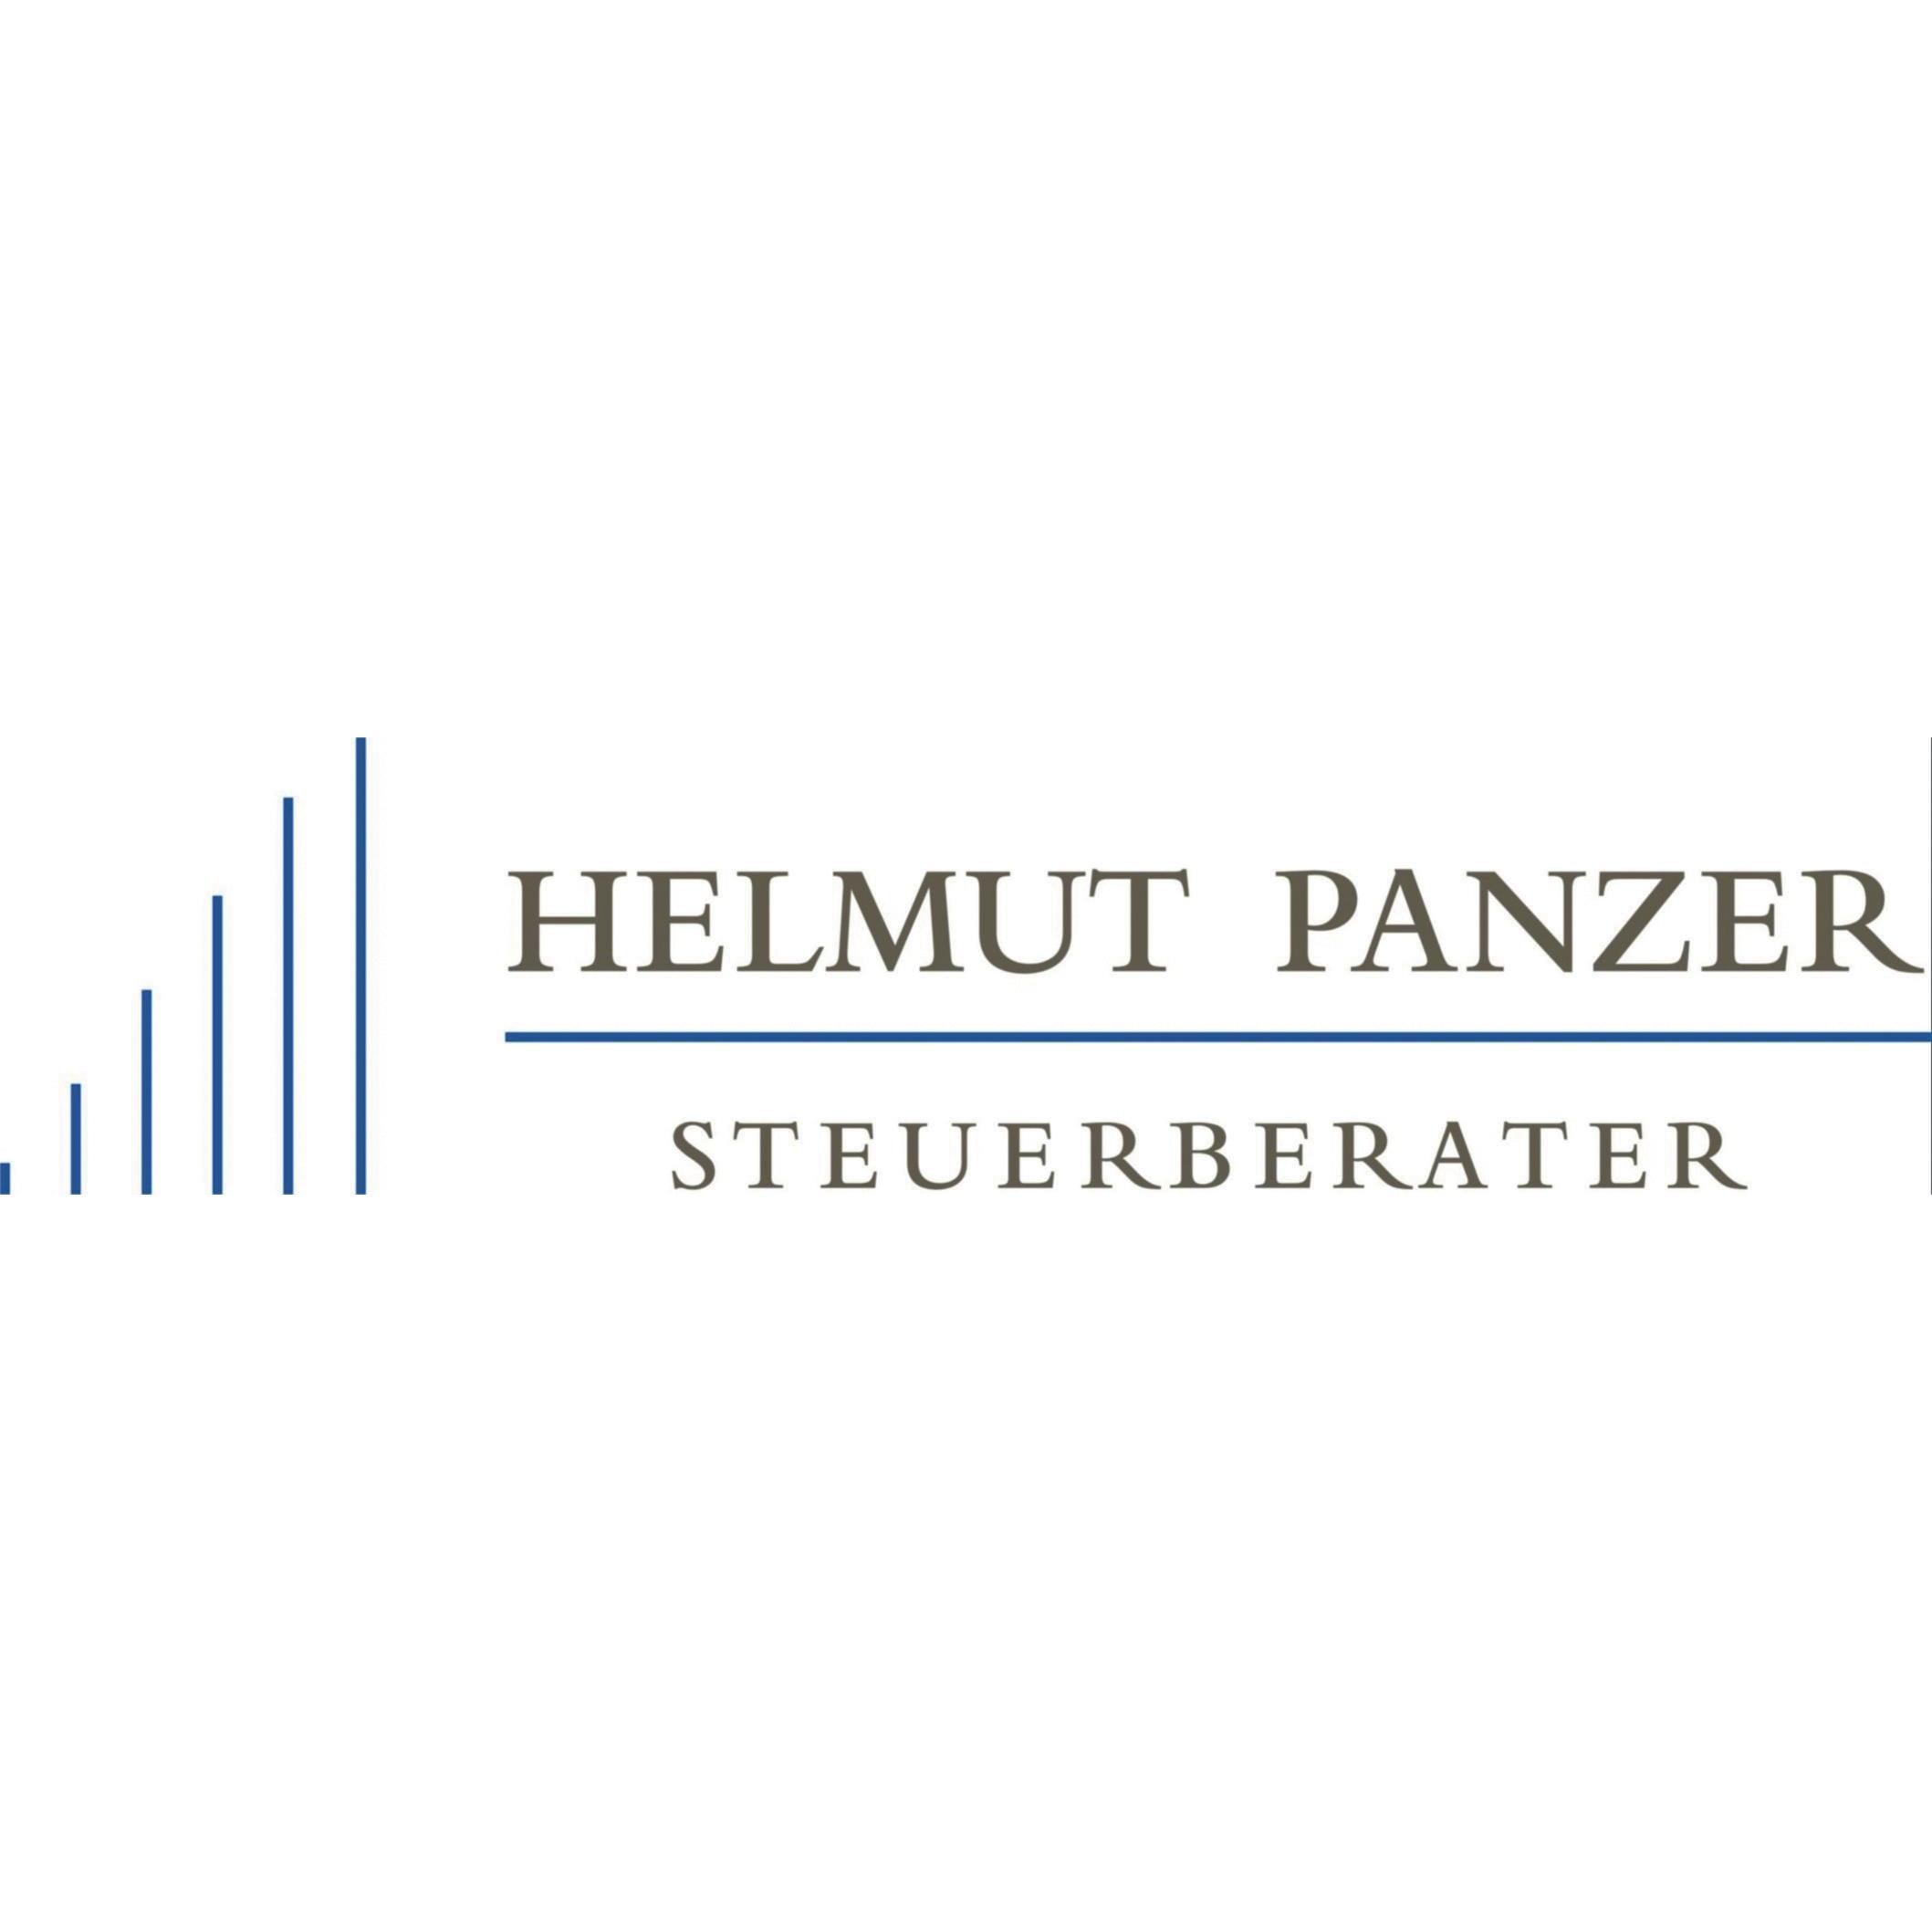 Helmut Panzer Steuerberater in Tönisvorst - Logo